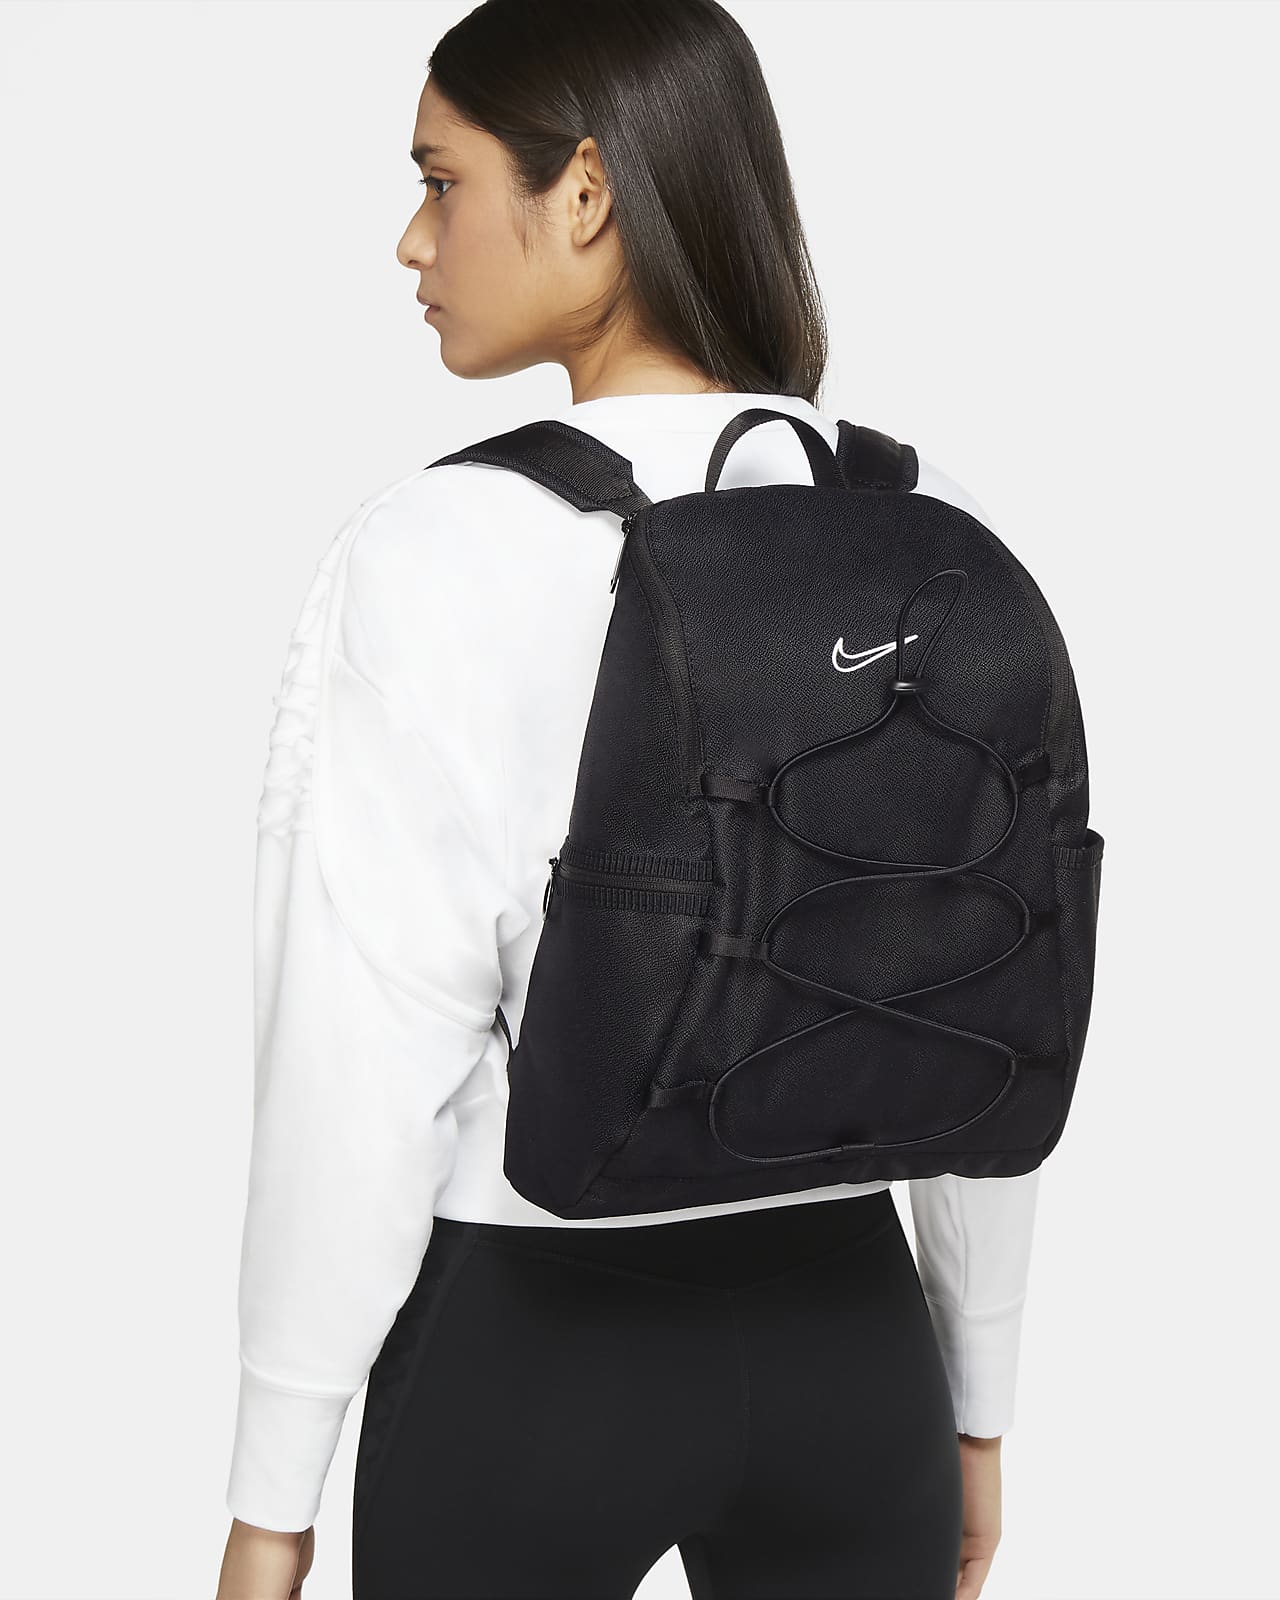 Nike One Women's Training Backpack. Nike ID